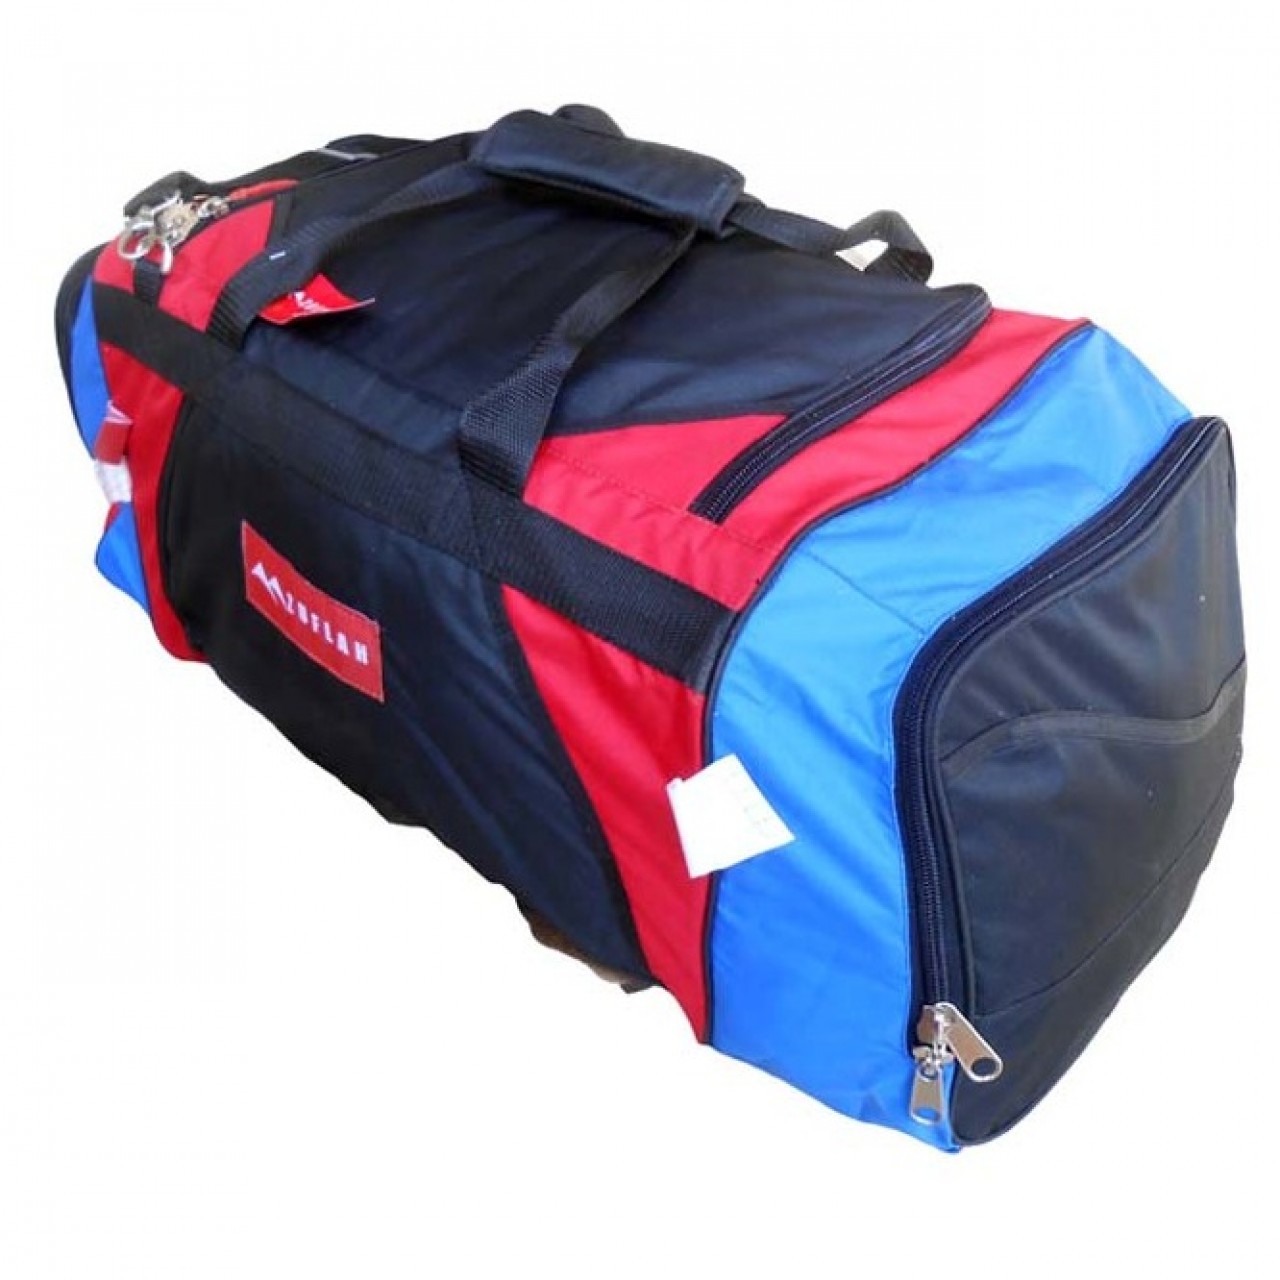 Travel Bag - Large - Red, Black & Royal Blue